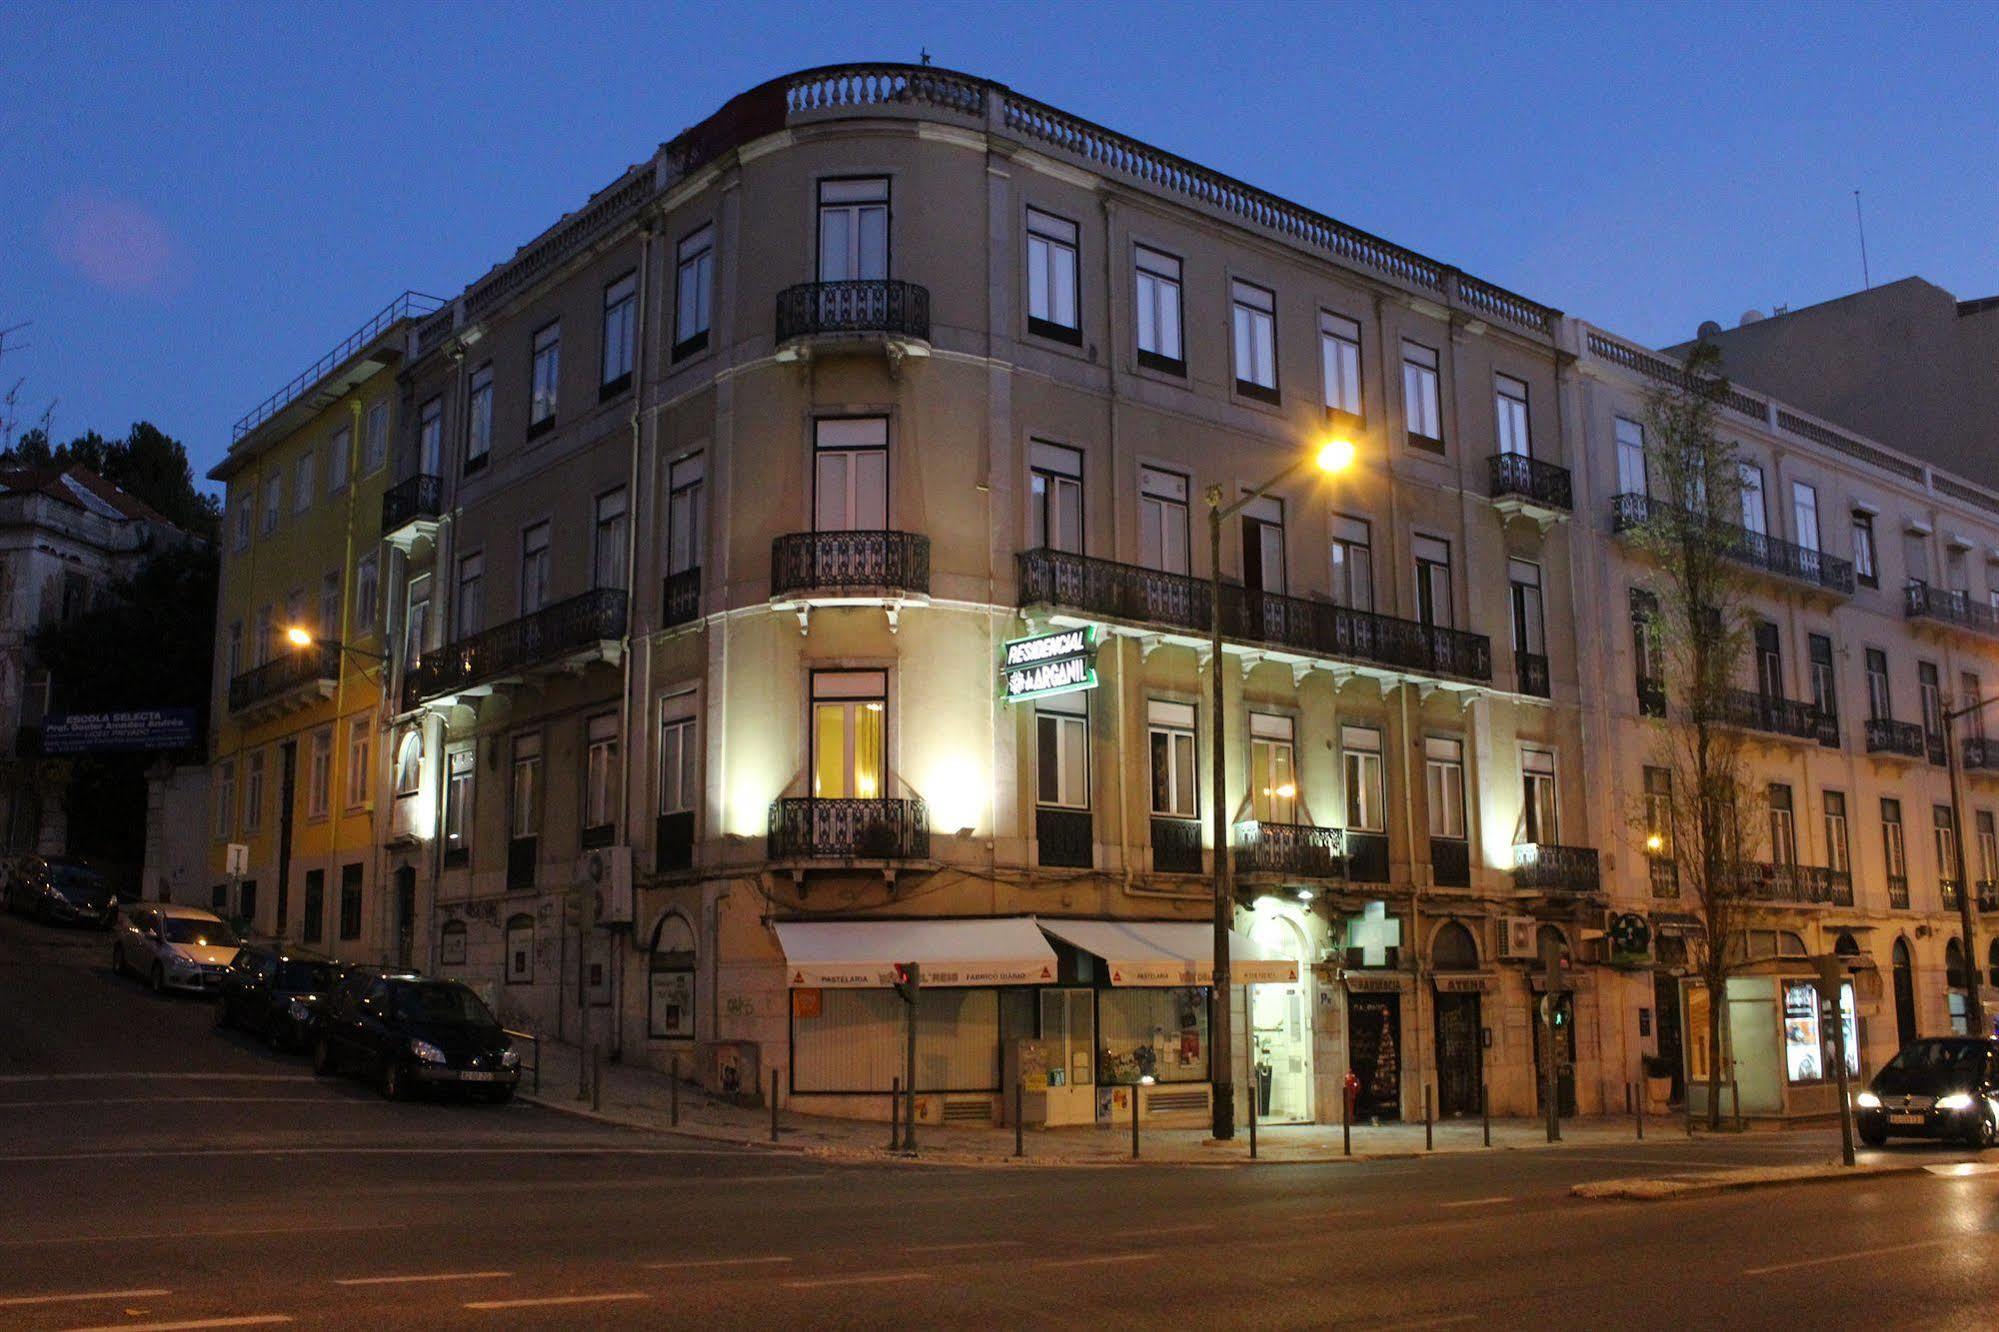 Hôtel Estrela de Arganil - Luis Simões&Conceição, Lda à Lisboa Extérieur photo